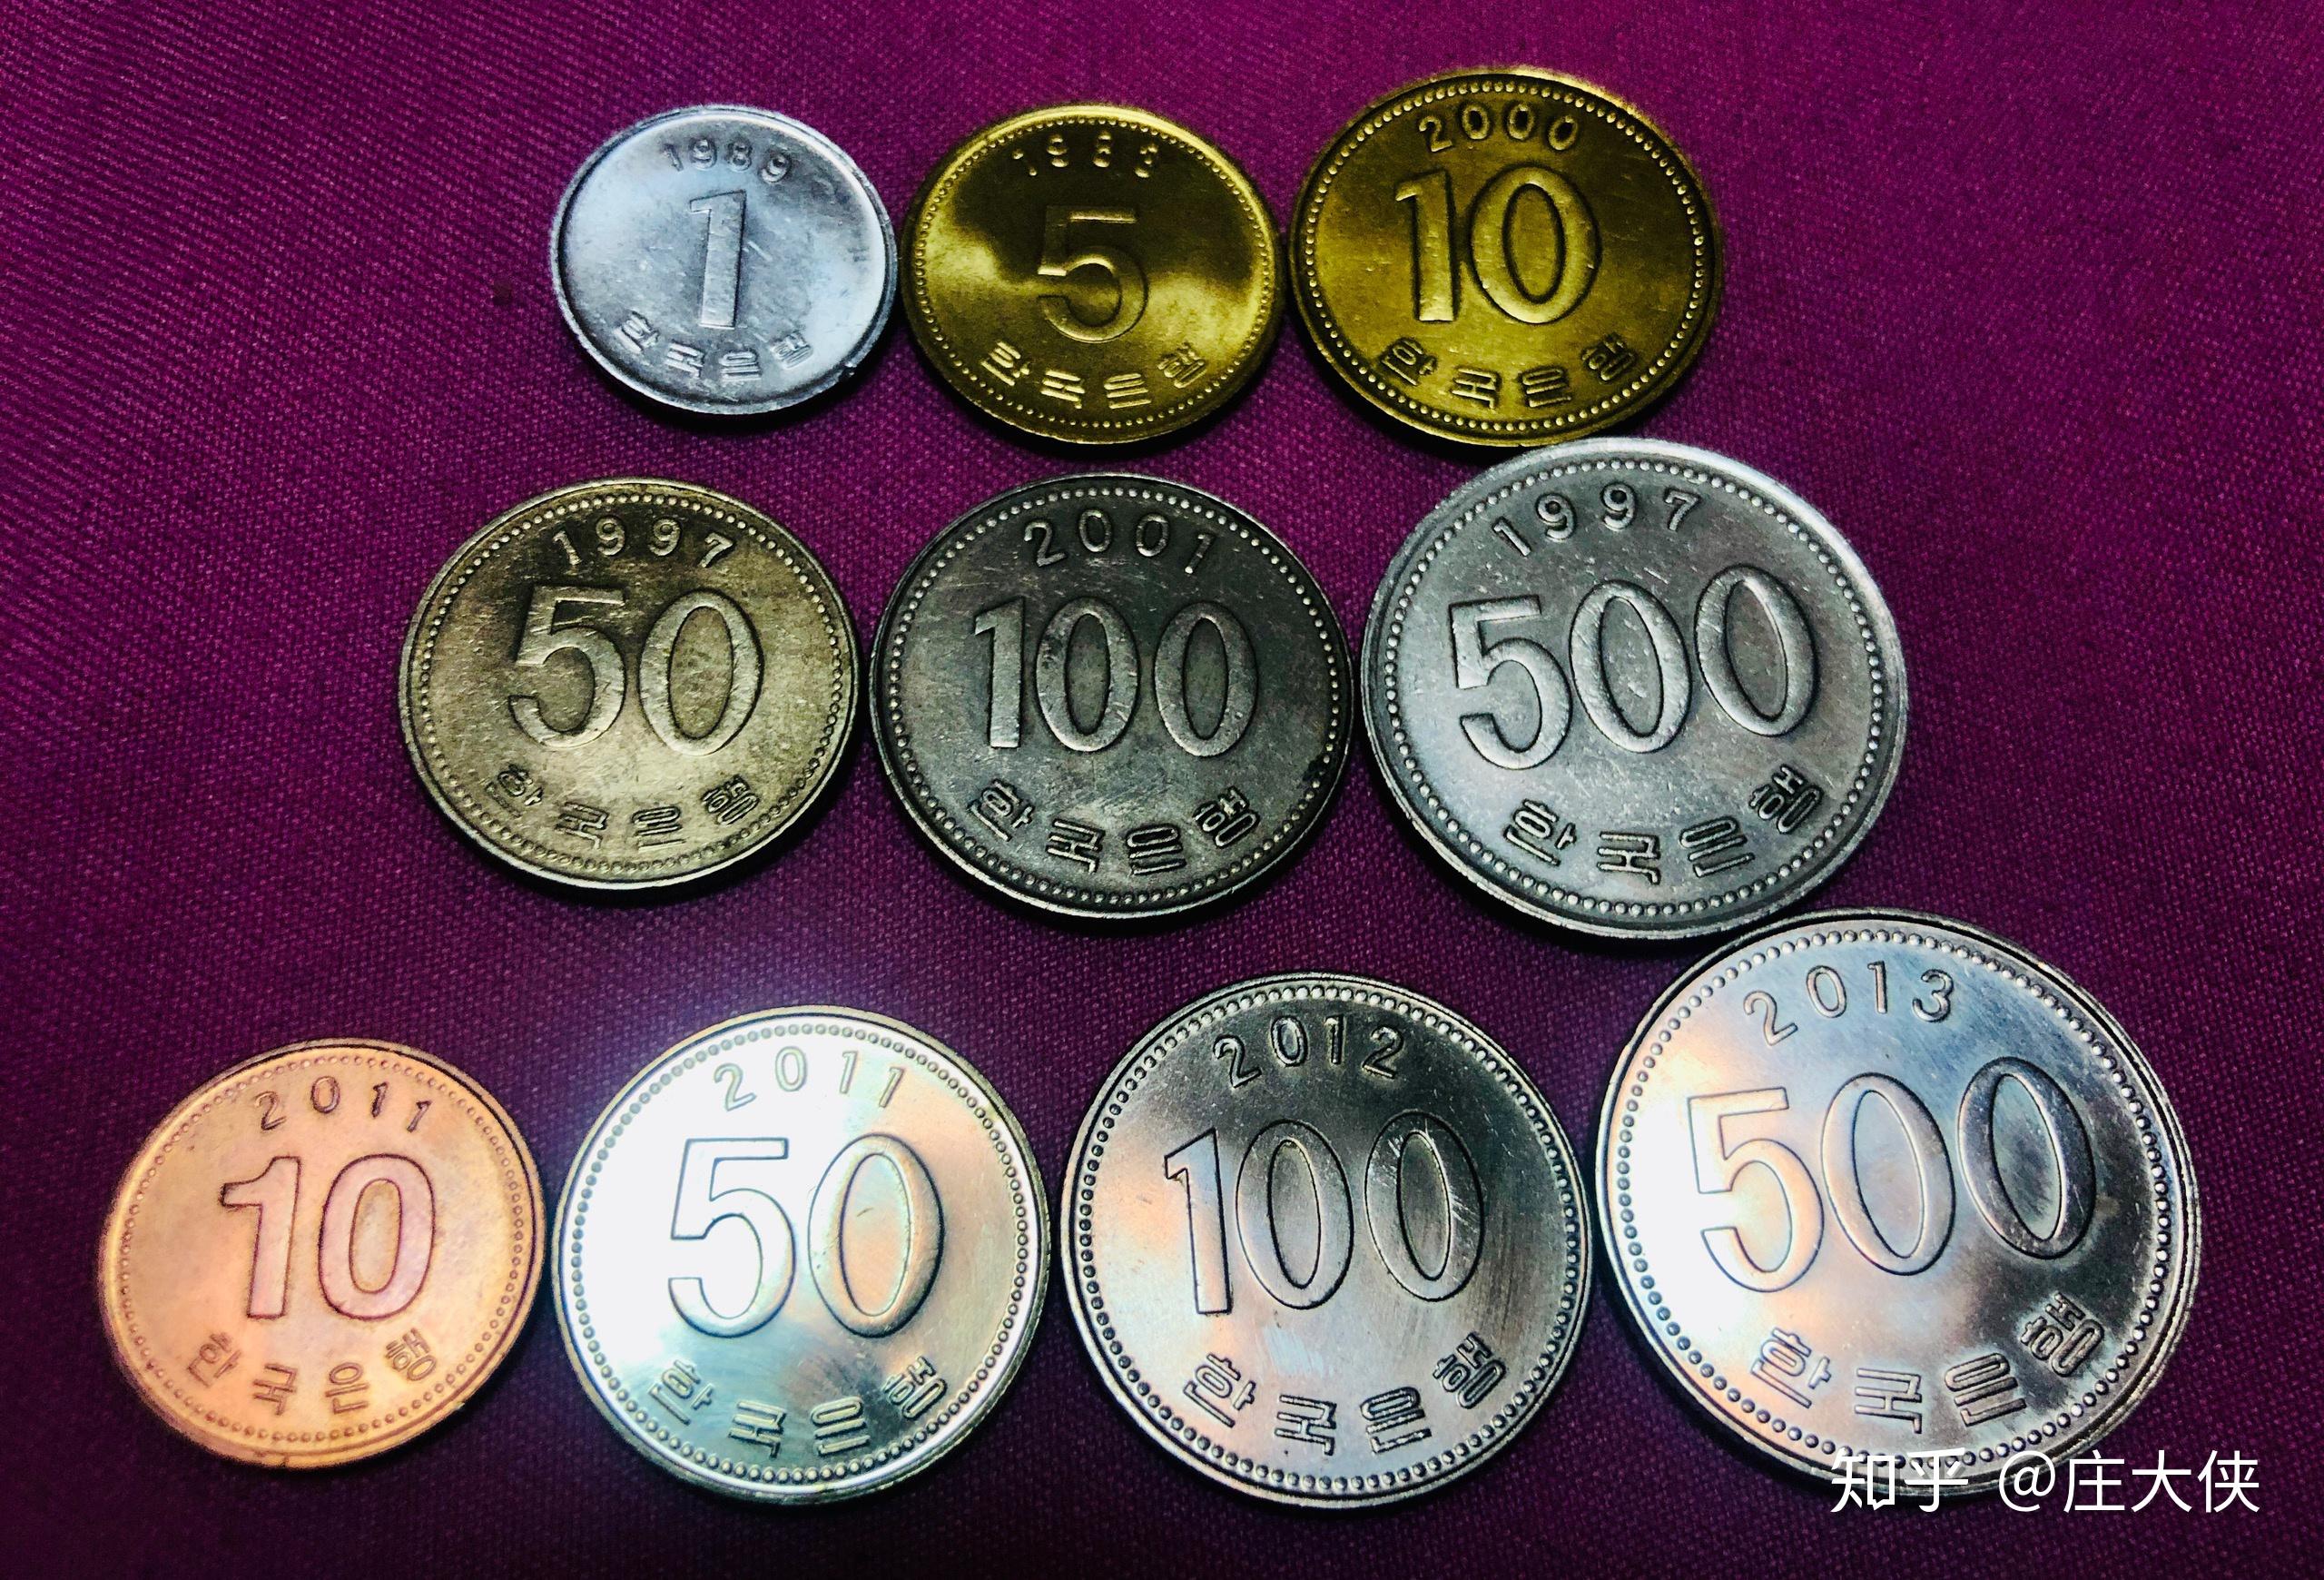 1991-2016年 1元硬币收藏分享 | 2003-2016年生肖币收藏分享_什么值得买